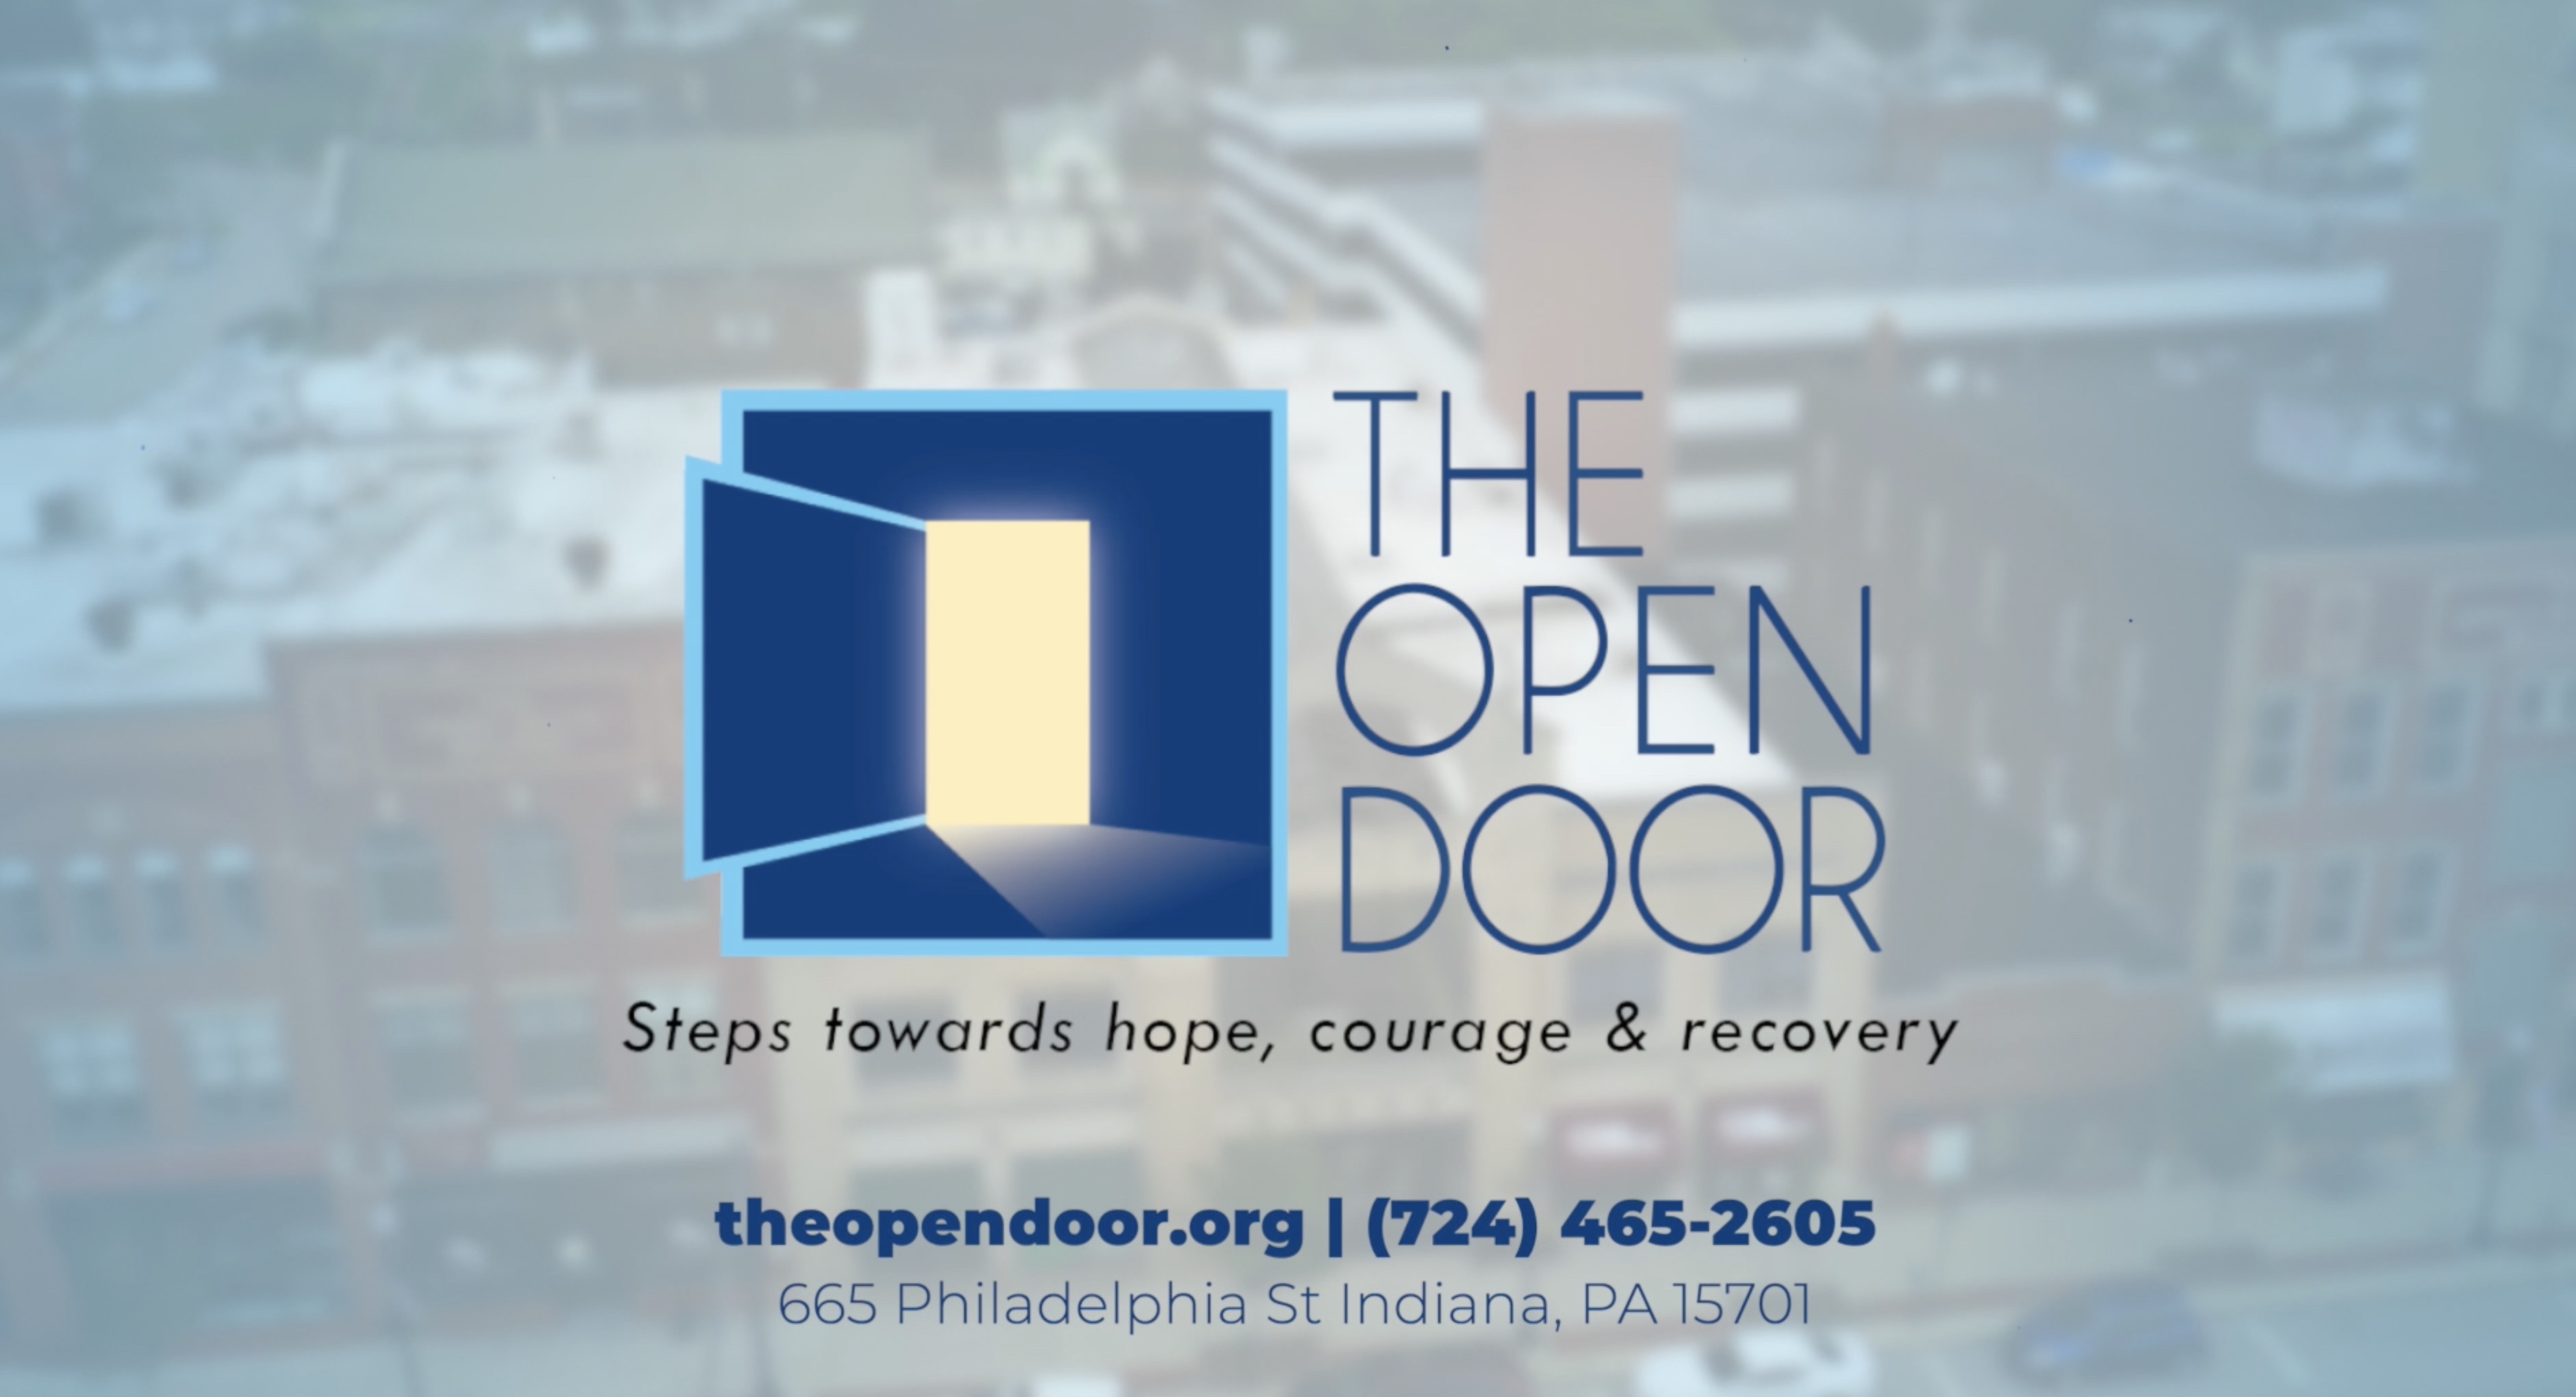 The 'Open Door' of Philadelphia